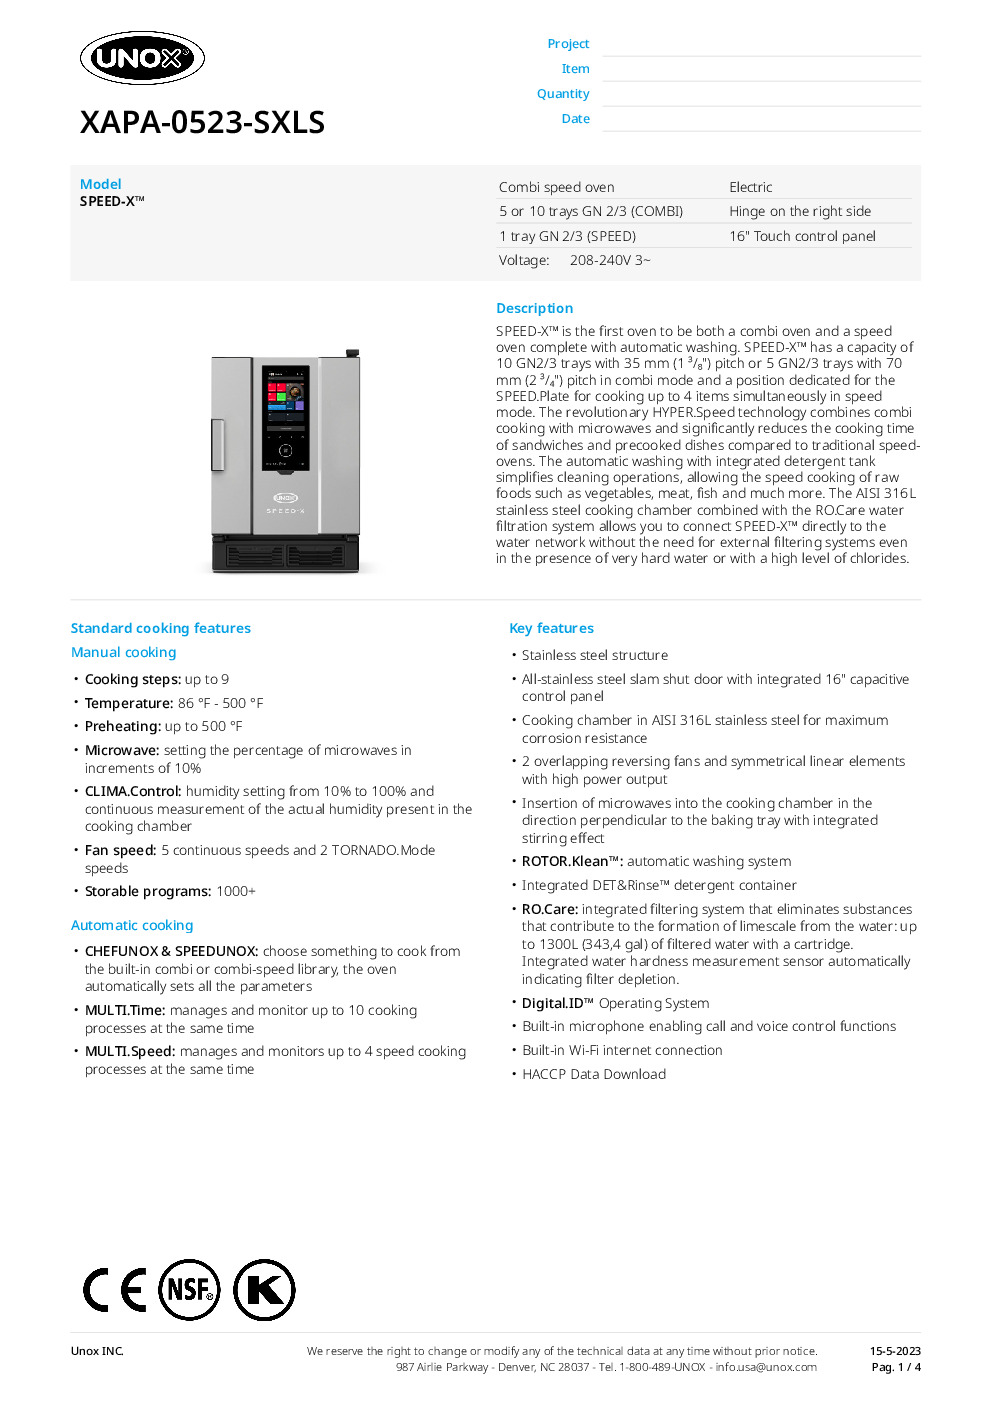 UNOX XAPA-0523-SXLS Electric Combi Oven